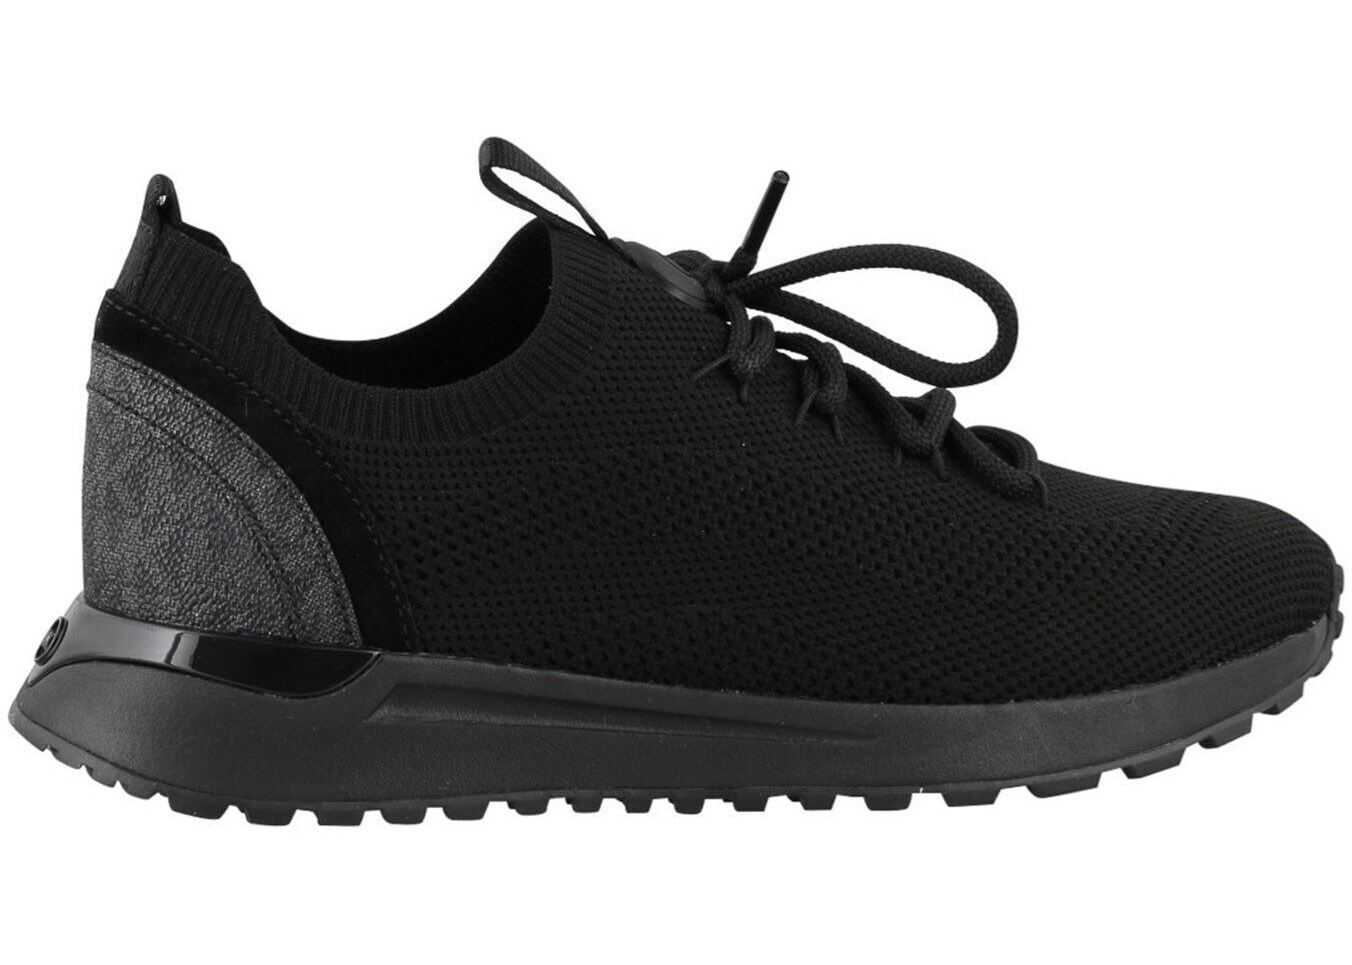 Michael Kors Bodie Sneakers In Black Black